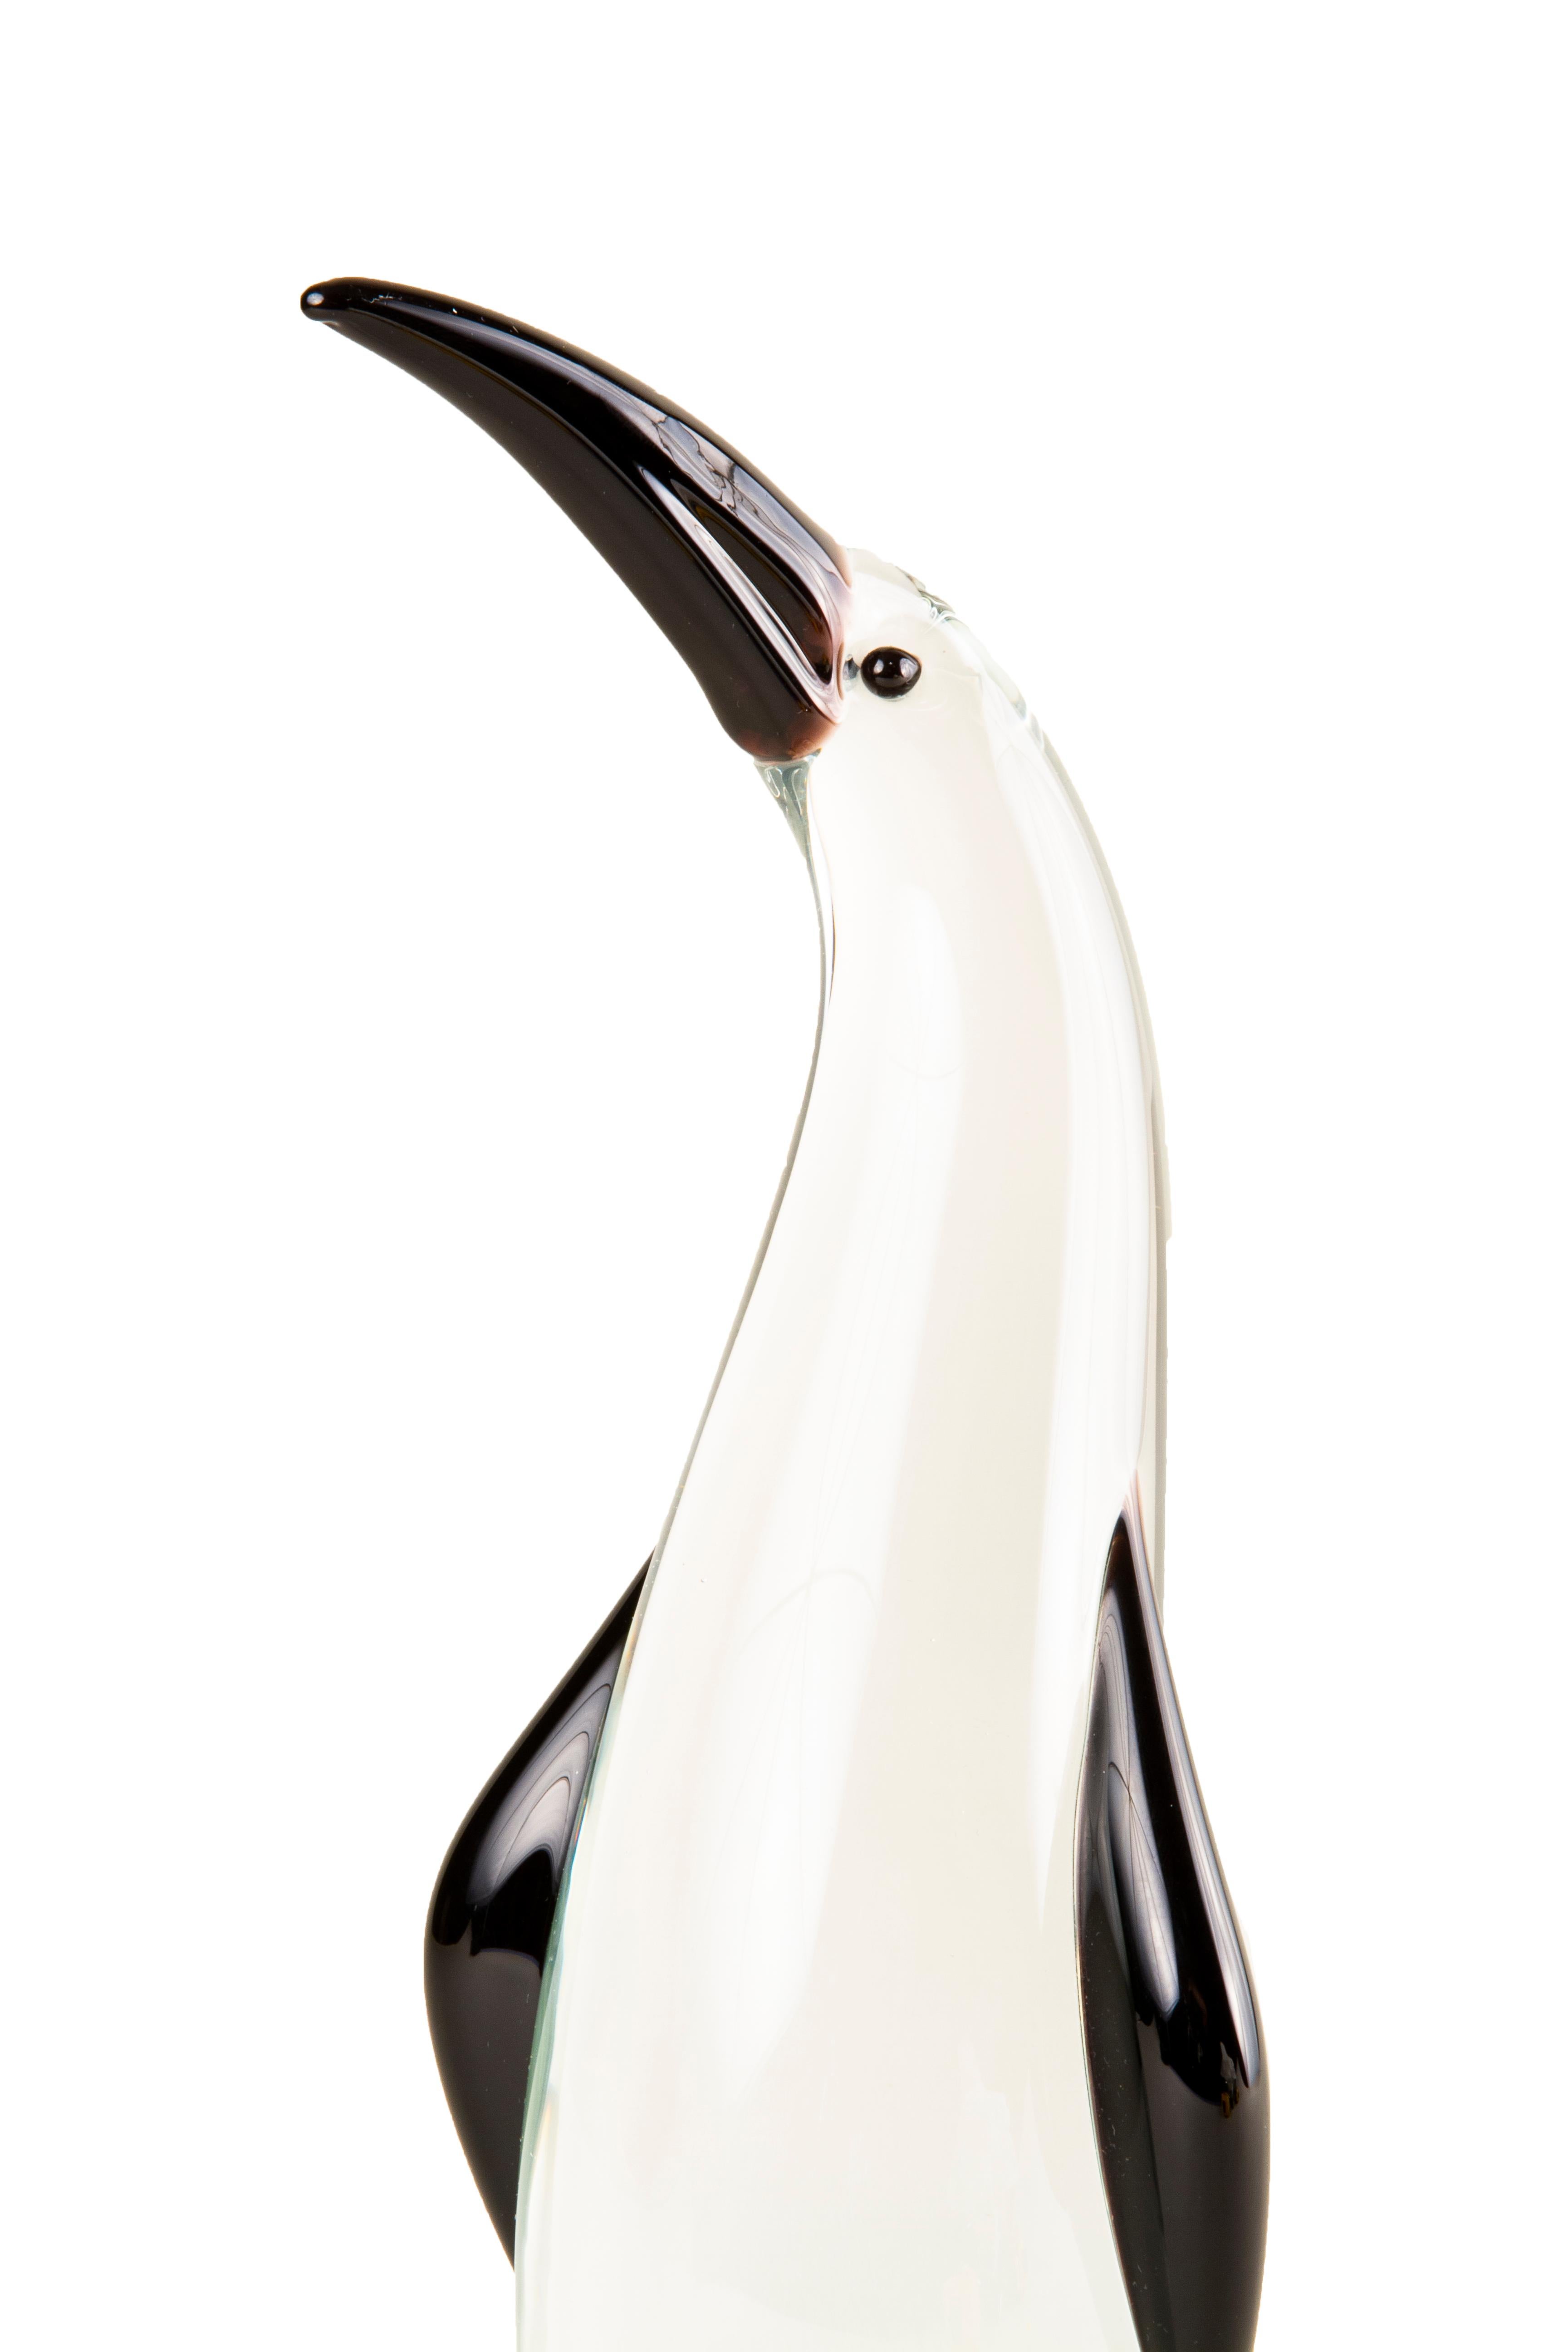 Sculpture fantaisiste de pingouin en verre d'art soufflé, datant du milieu du siècle dernier, attribuée à Antonio da Ros et réalisée pour Cenedese. Elle est décorée d'une épaisse couche de verre transparent et d'un bec, de nageoires et d'yeux en